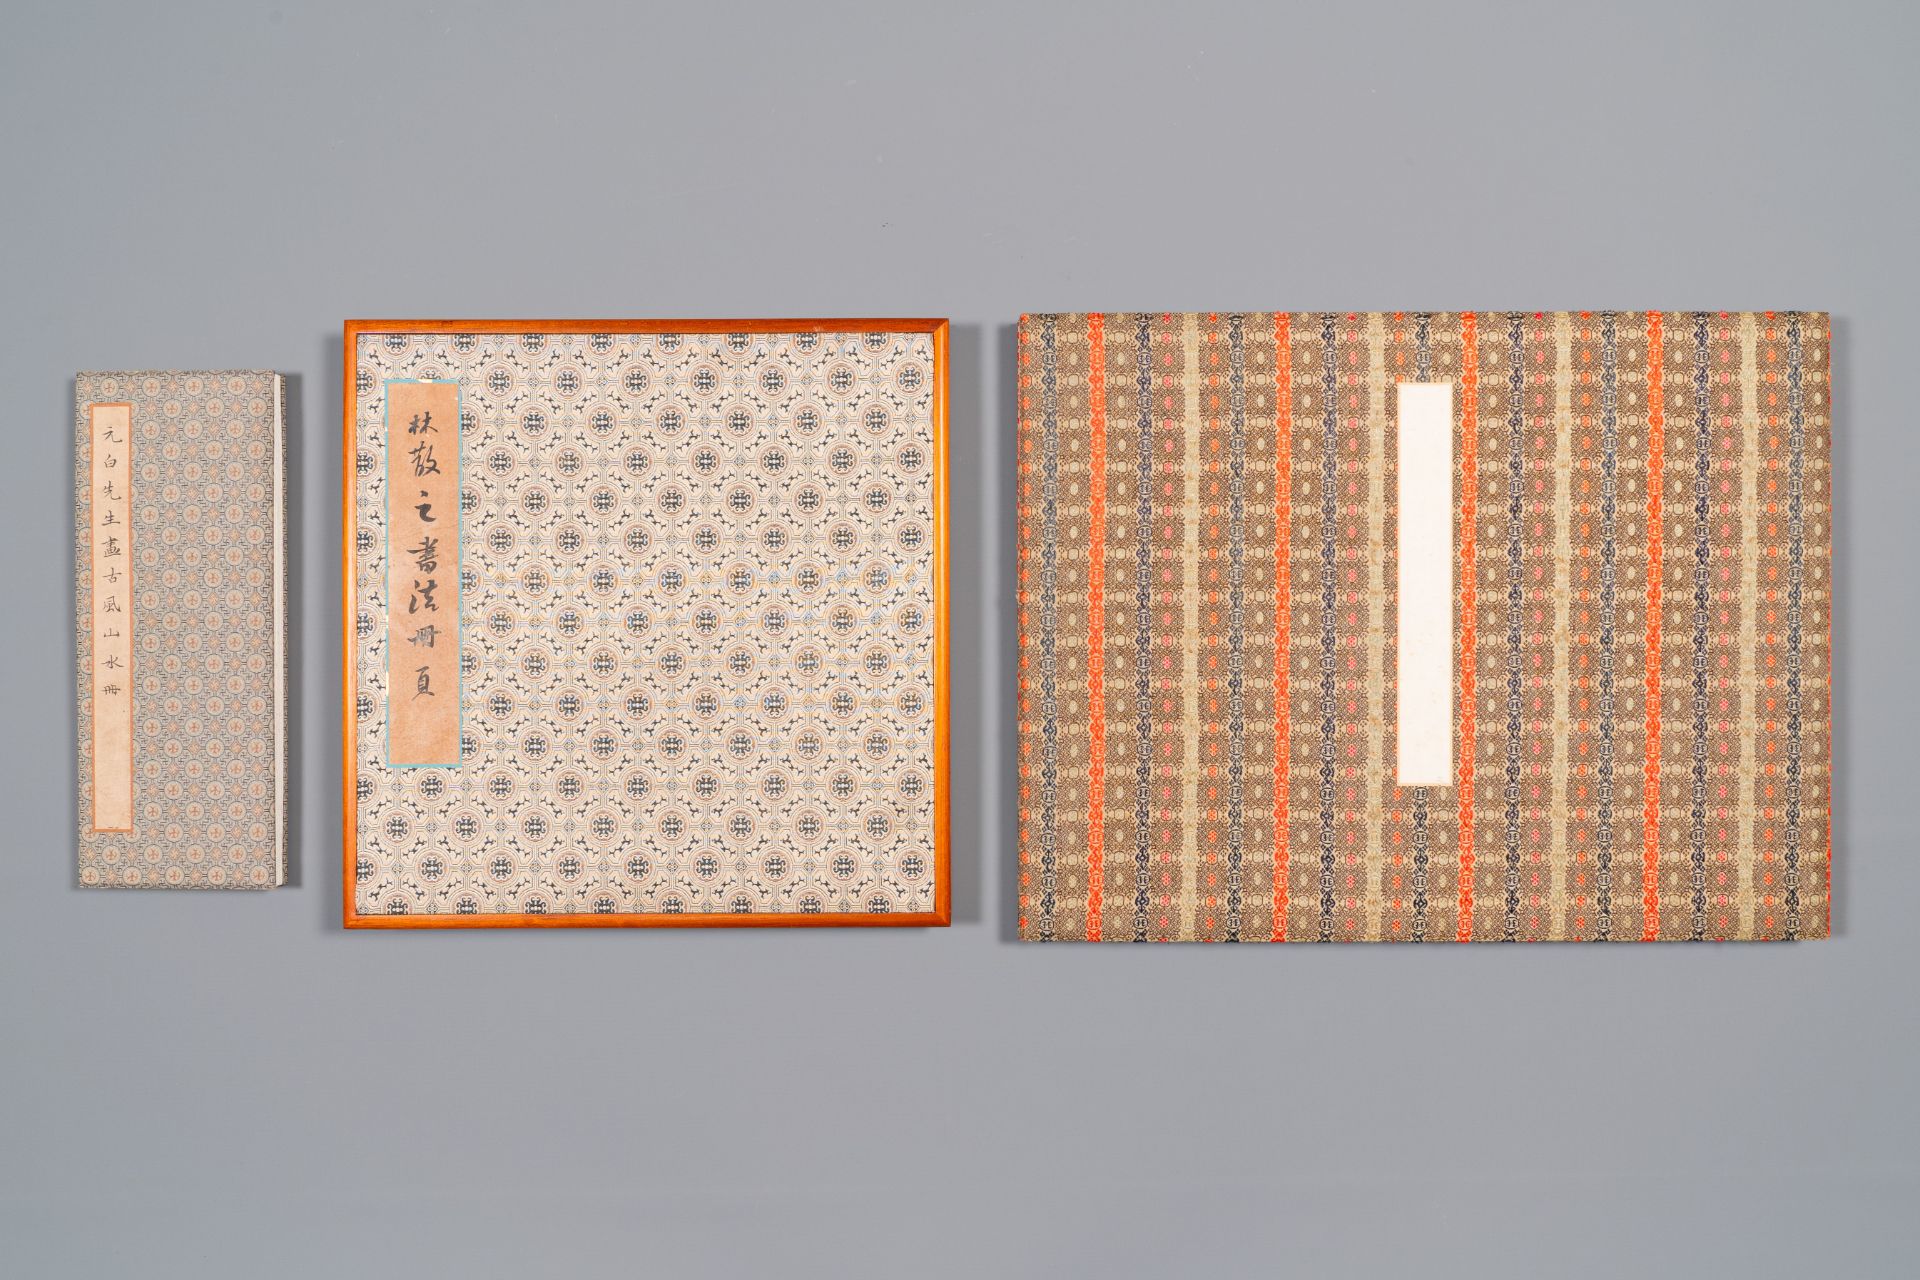 Three albums: 'Jiang Hanting æ±Ÿå¯’æ±€ (1904-1963), Lin Sanzhi æž—æ•£ä¹‹ (1898-1989) and Qi Gong å¯